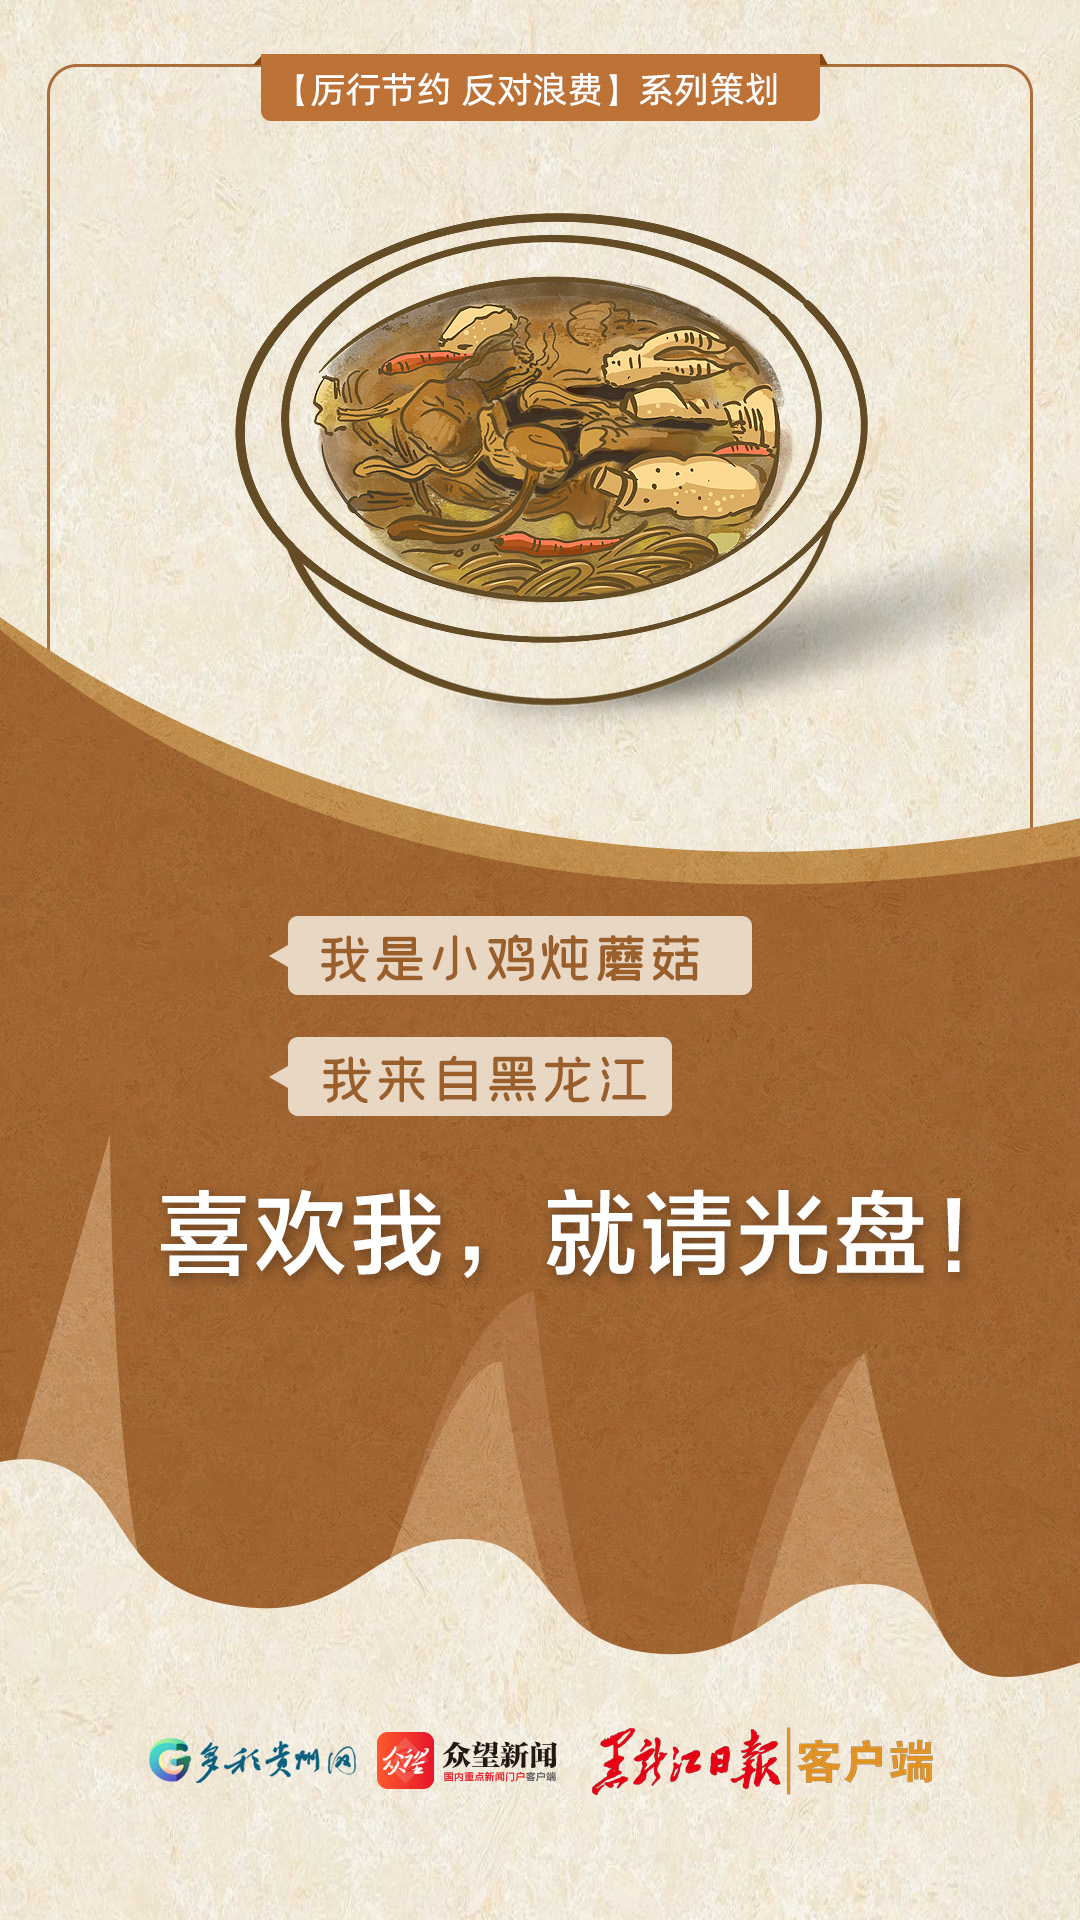 贵州携手6省市美食向你喊话:喜欢我们,请光盘!